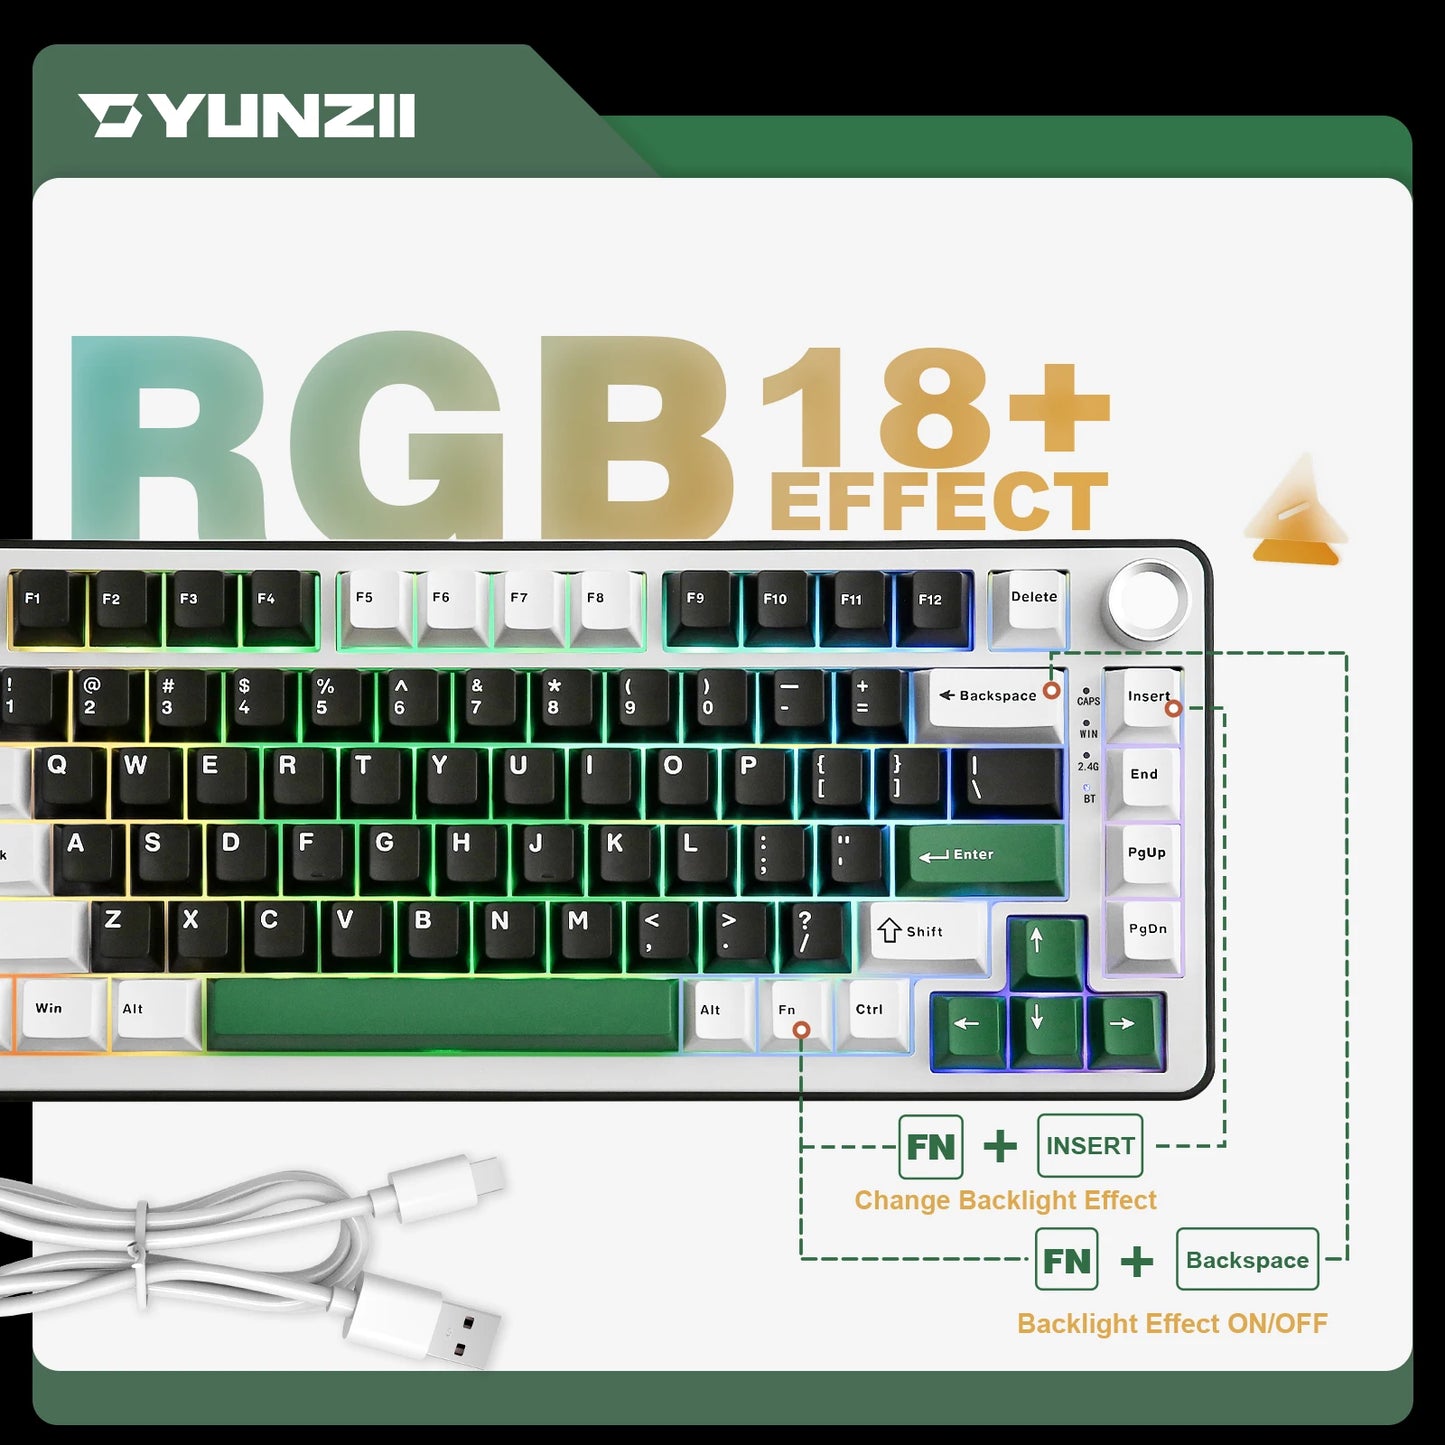 YUNZII B75 PRO Wireless Creamy Gaming Keyboard